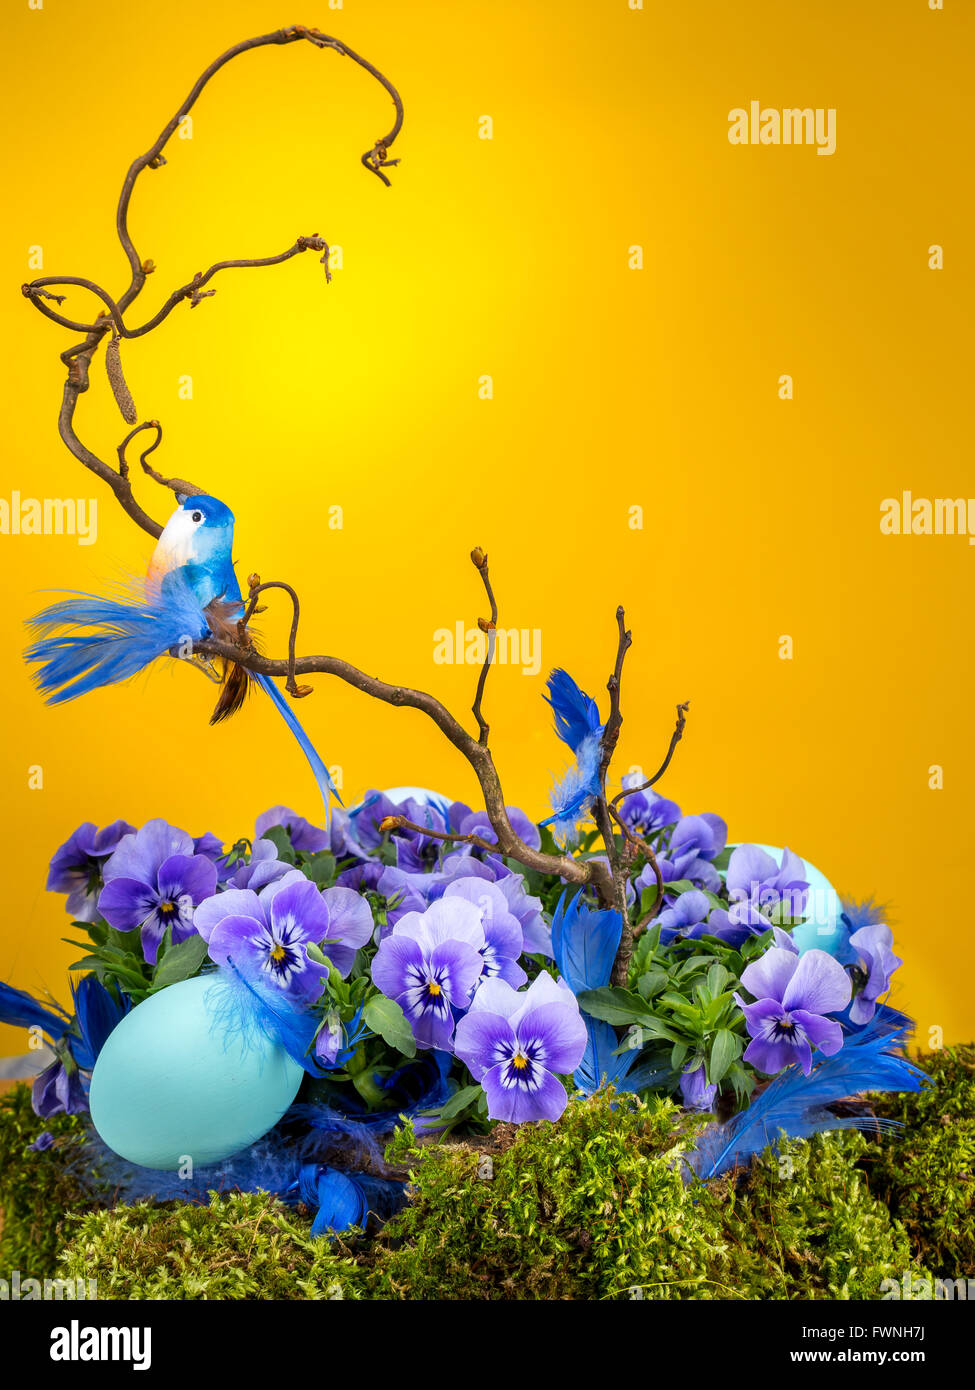 Composizione di pasqua con blue bird seduto sul ramo di albero con fiori viola fine uovo blu shot su sfondo giallo Foto Stock